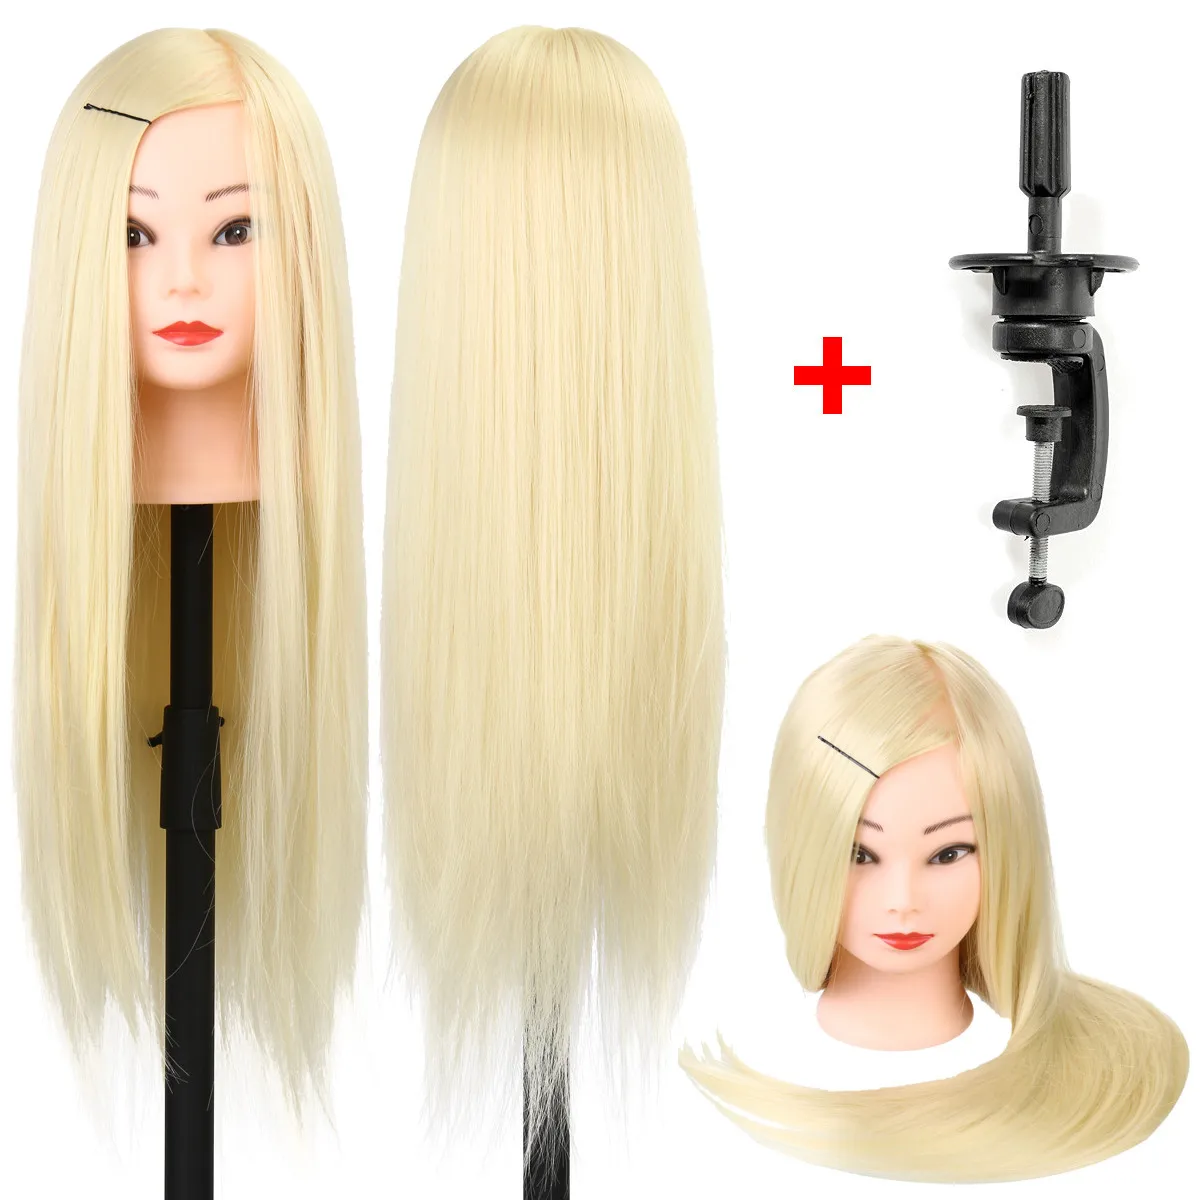 60 см манекен голова с золотыми волосами обучение Парикмахерская практика манекен куклы парикмахерские прически Обучение манекен головы